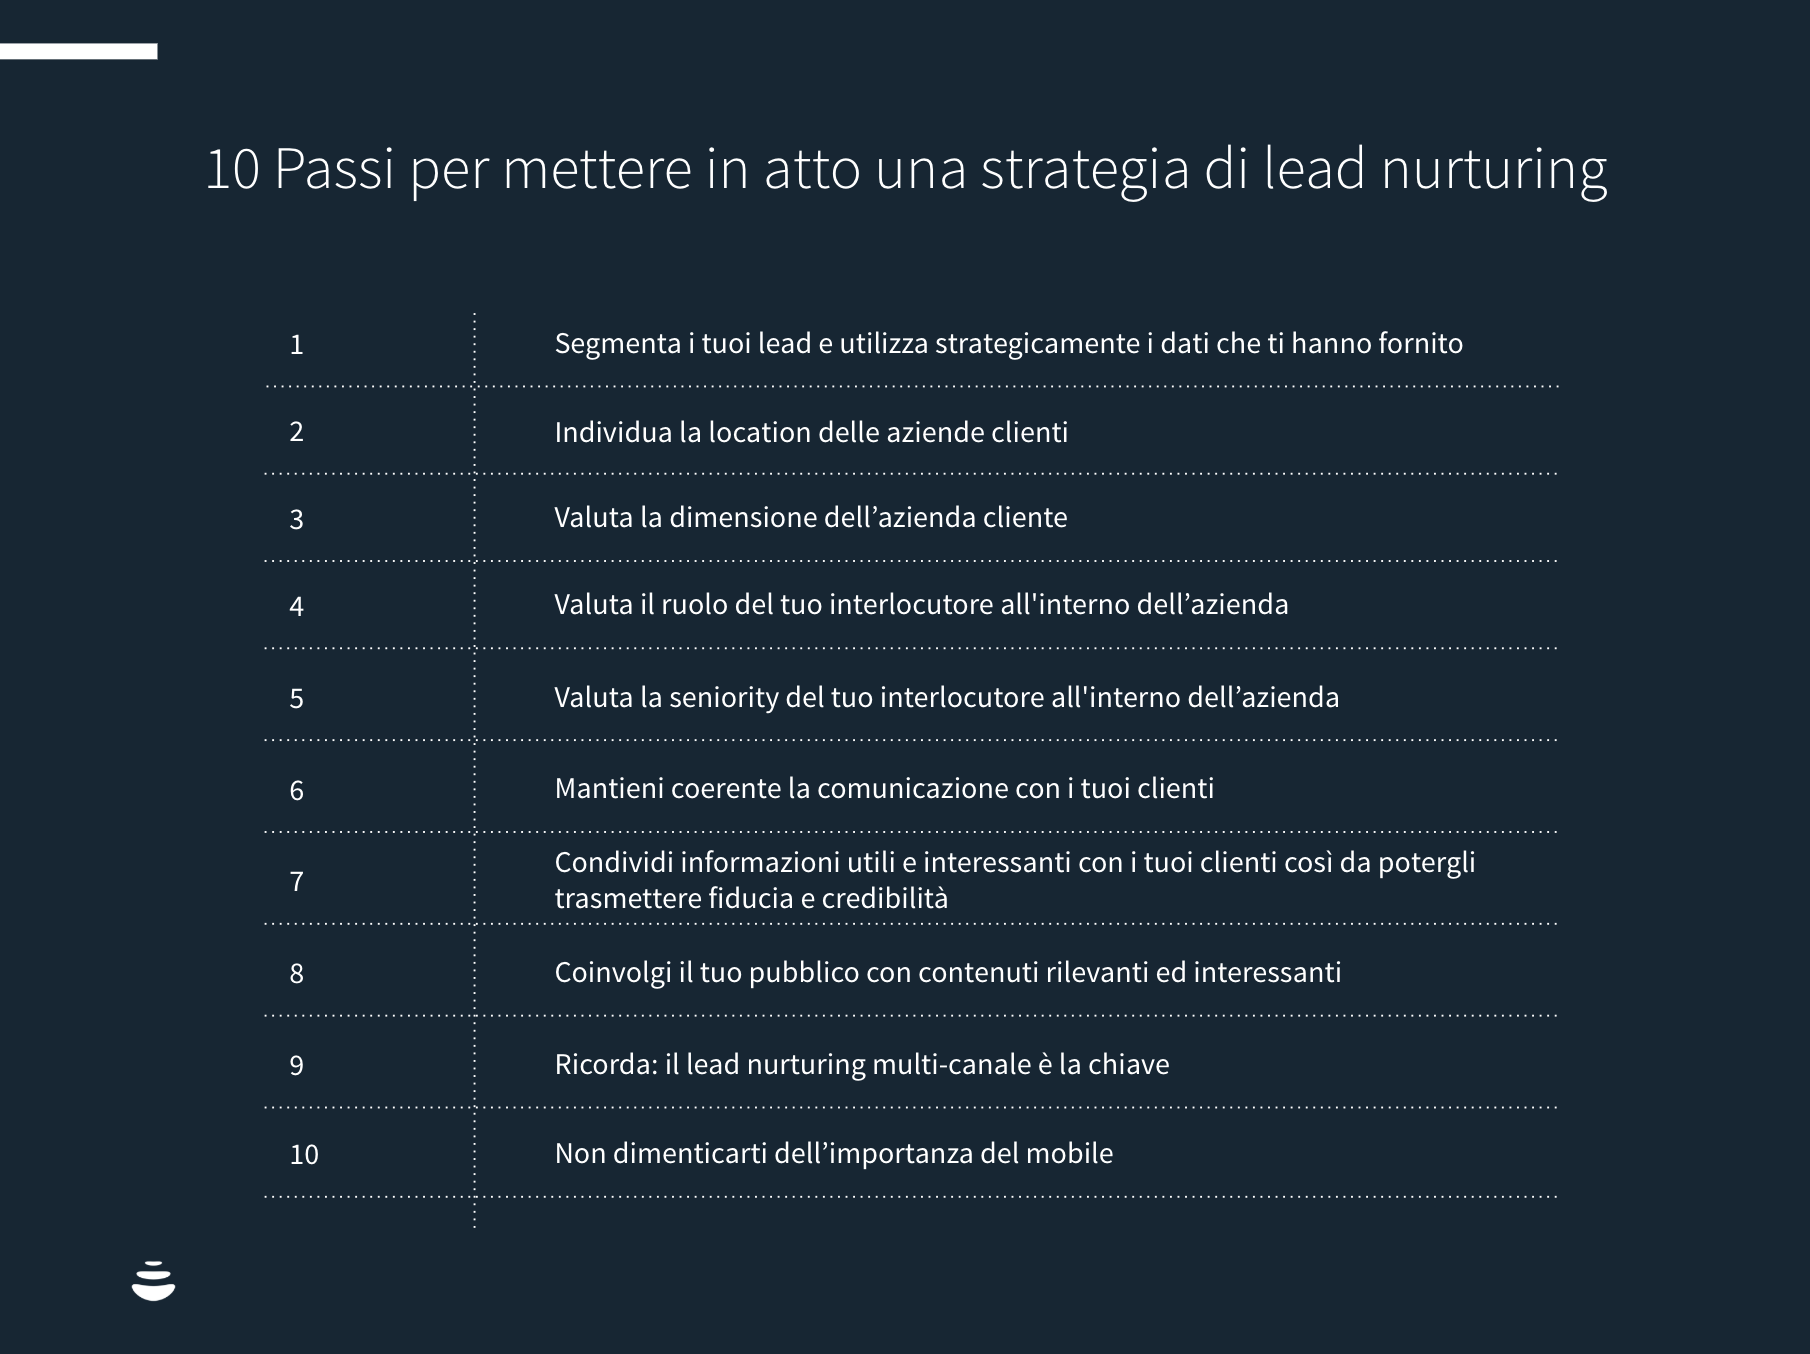 10 Passi per mettere in atto una strategia di lead nurturing